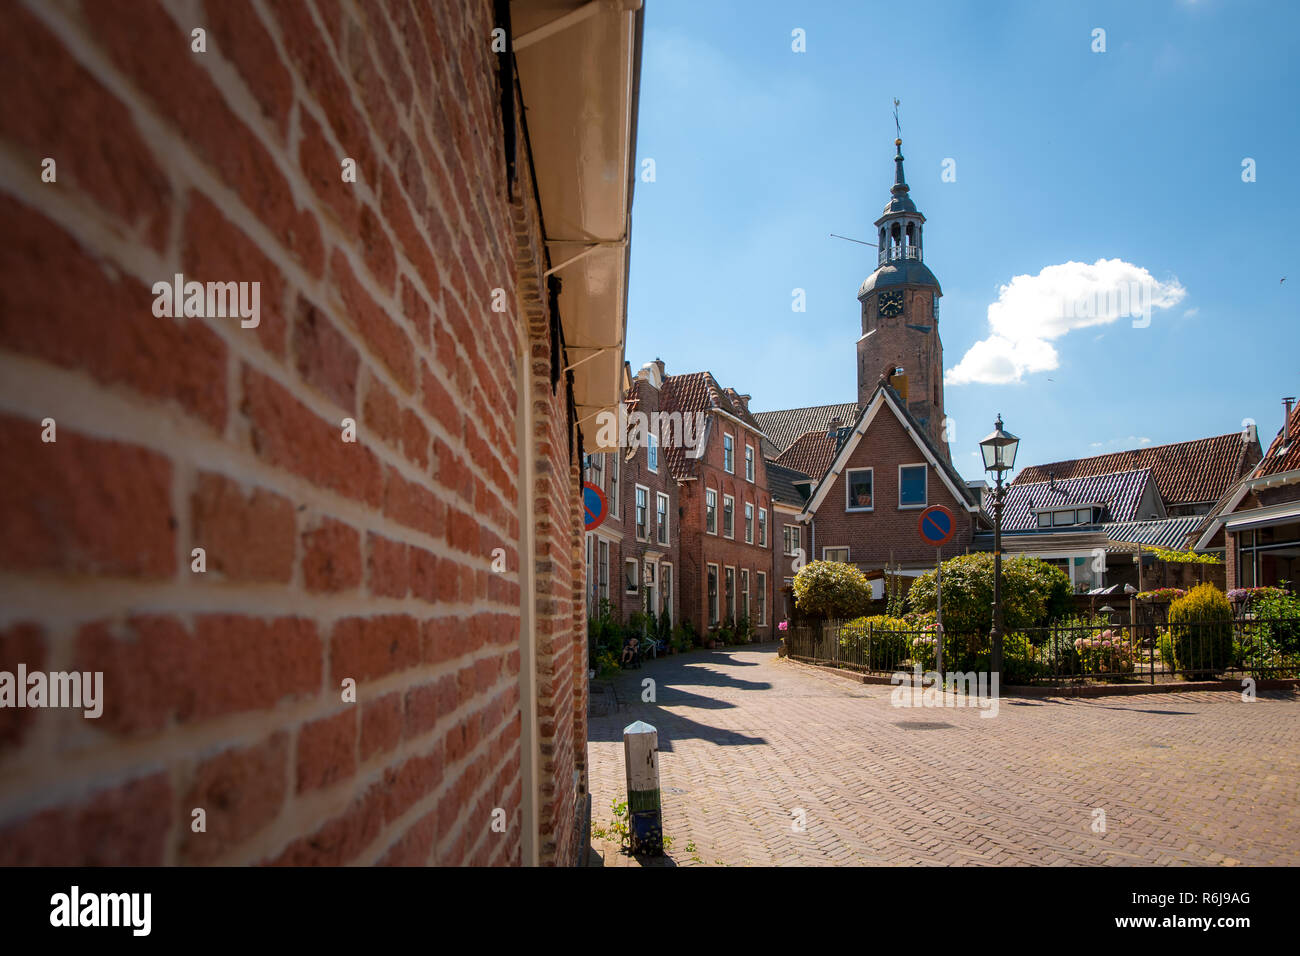 Le vecchie case in una città olandese con bellissime facciate decorate. Strade e vedere-through in una vecchia città in Paesi Bassi. Città vecchia storica blokzijl Foto Stock